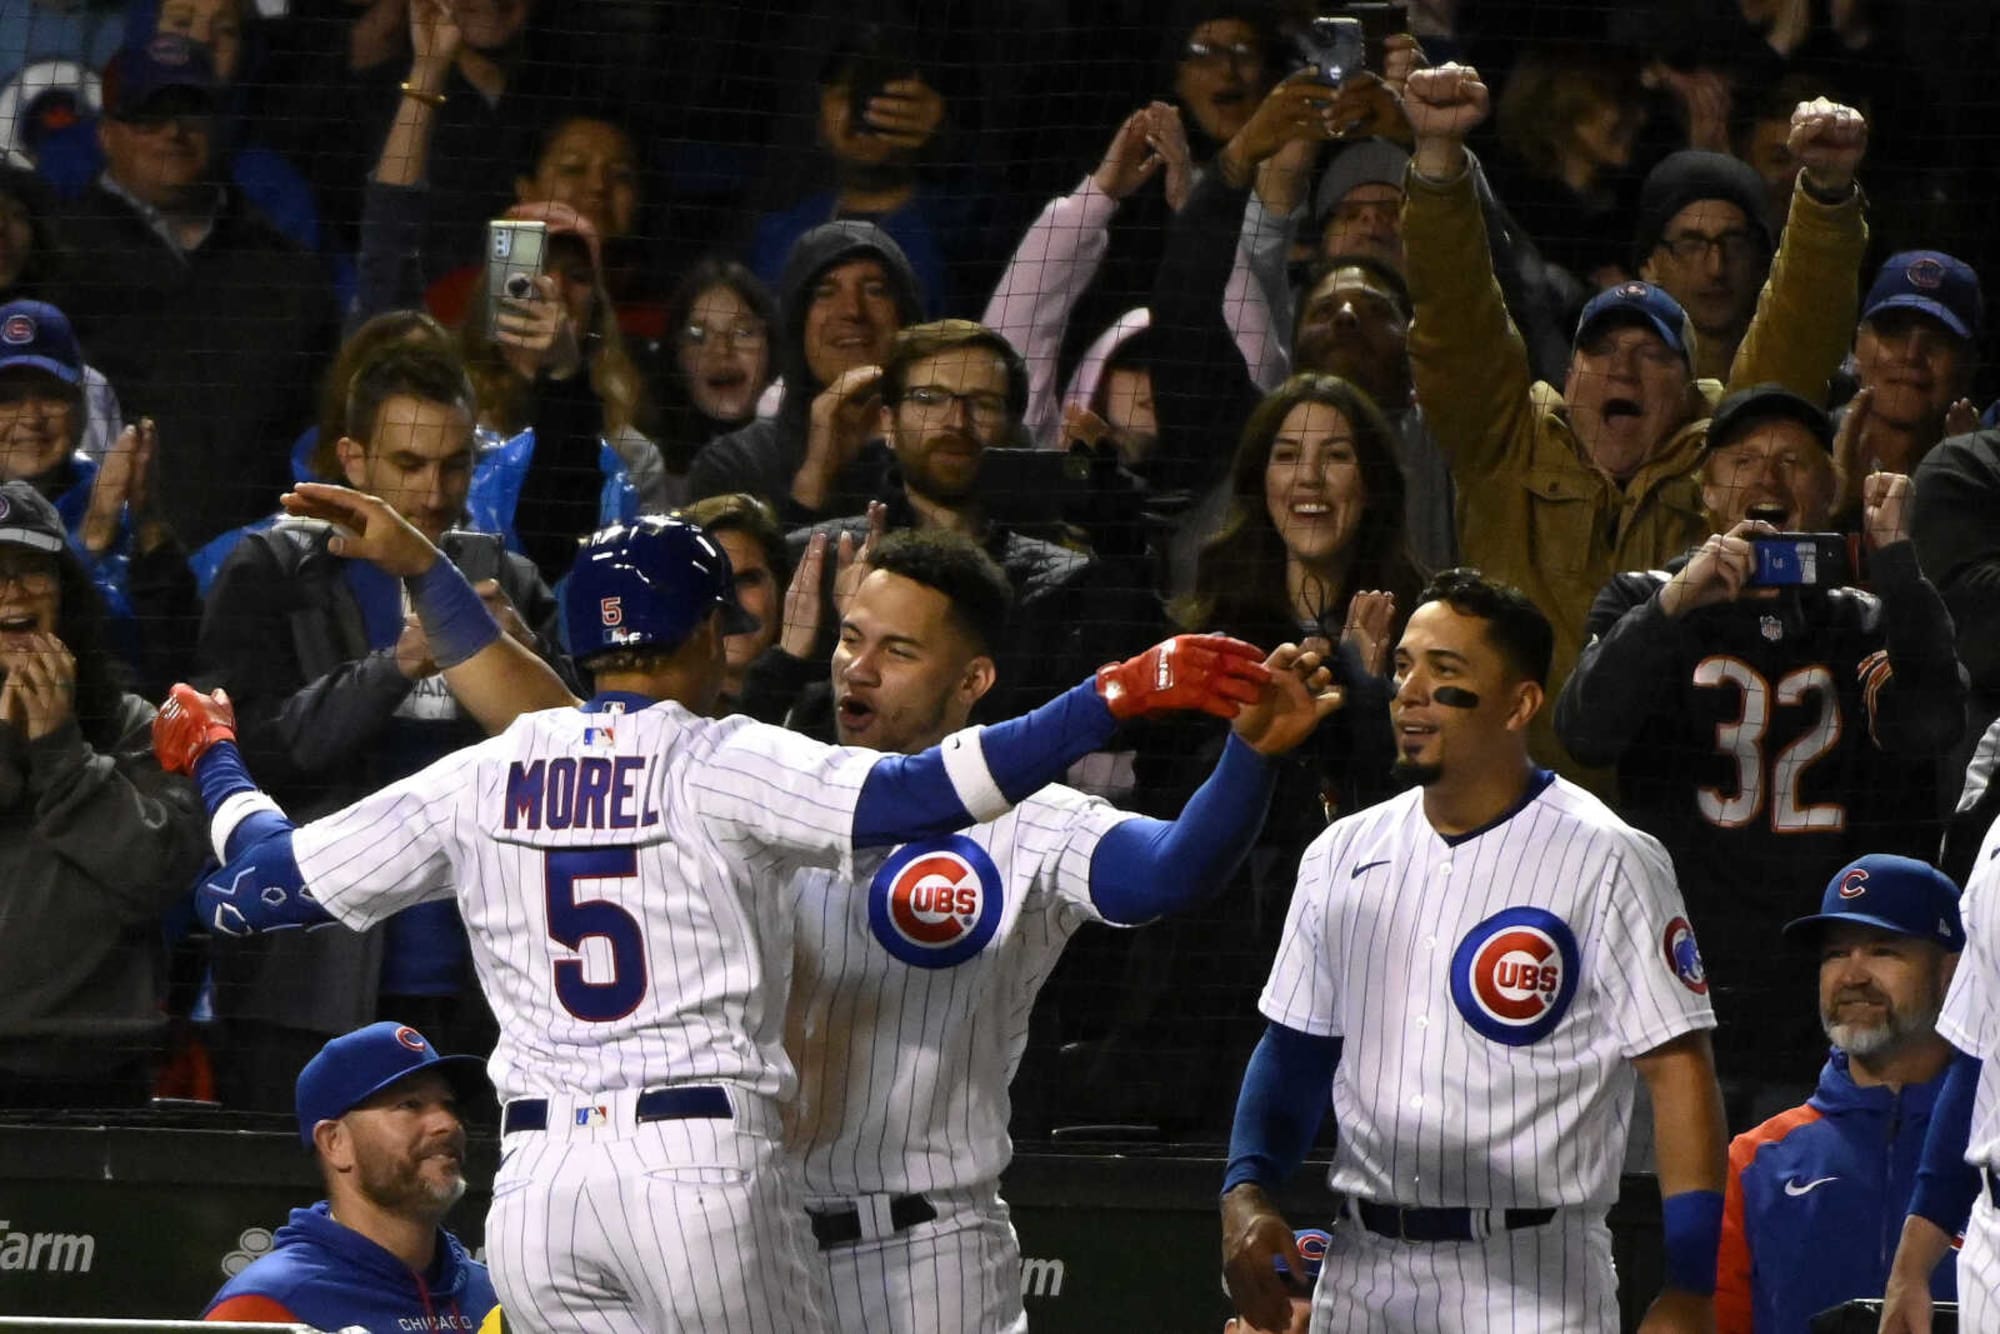 Chicago Cubs: Báez walk-off home run beats Nationals in 13